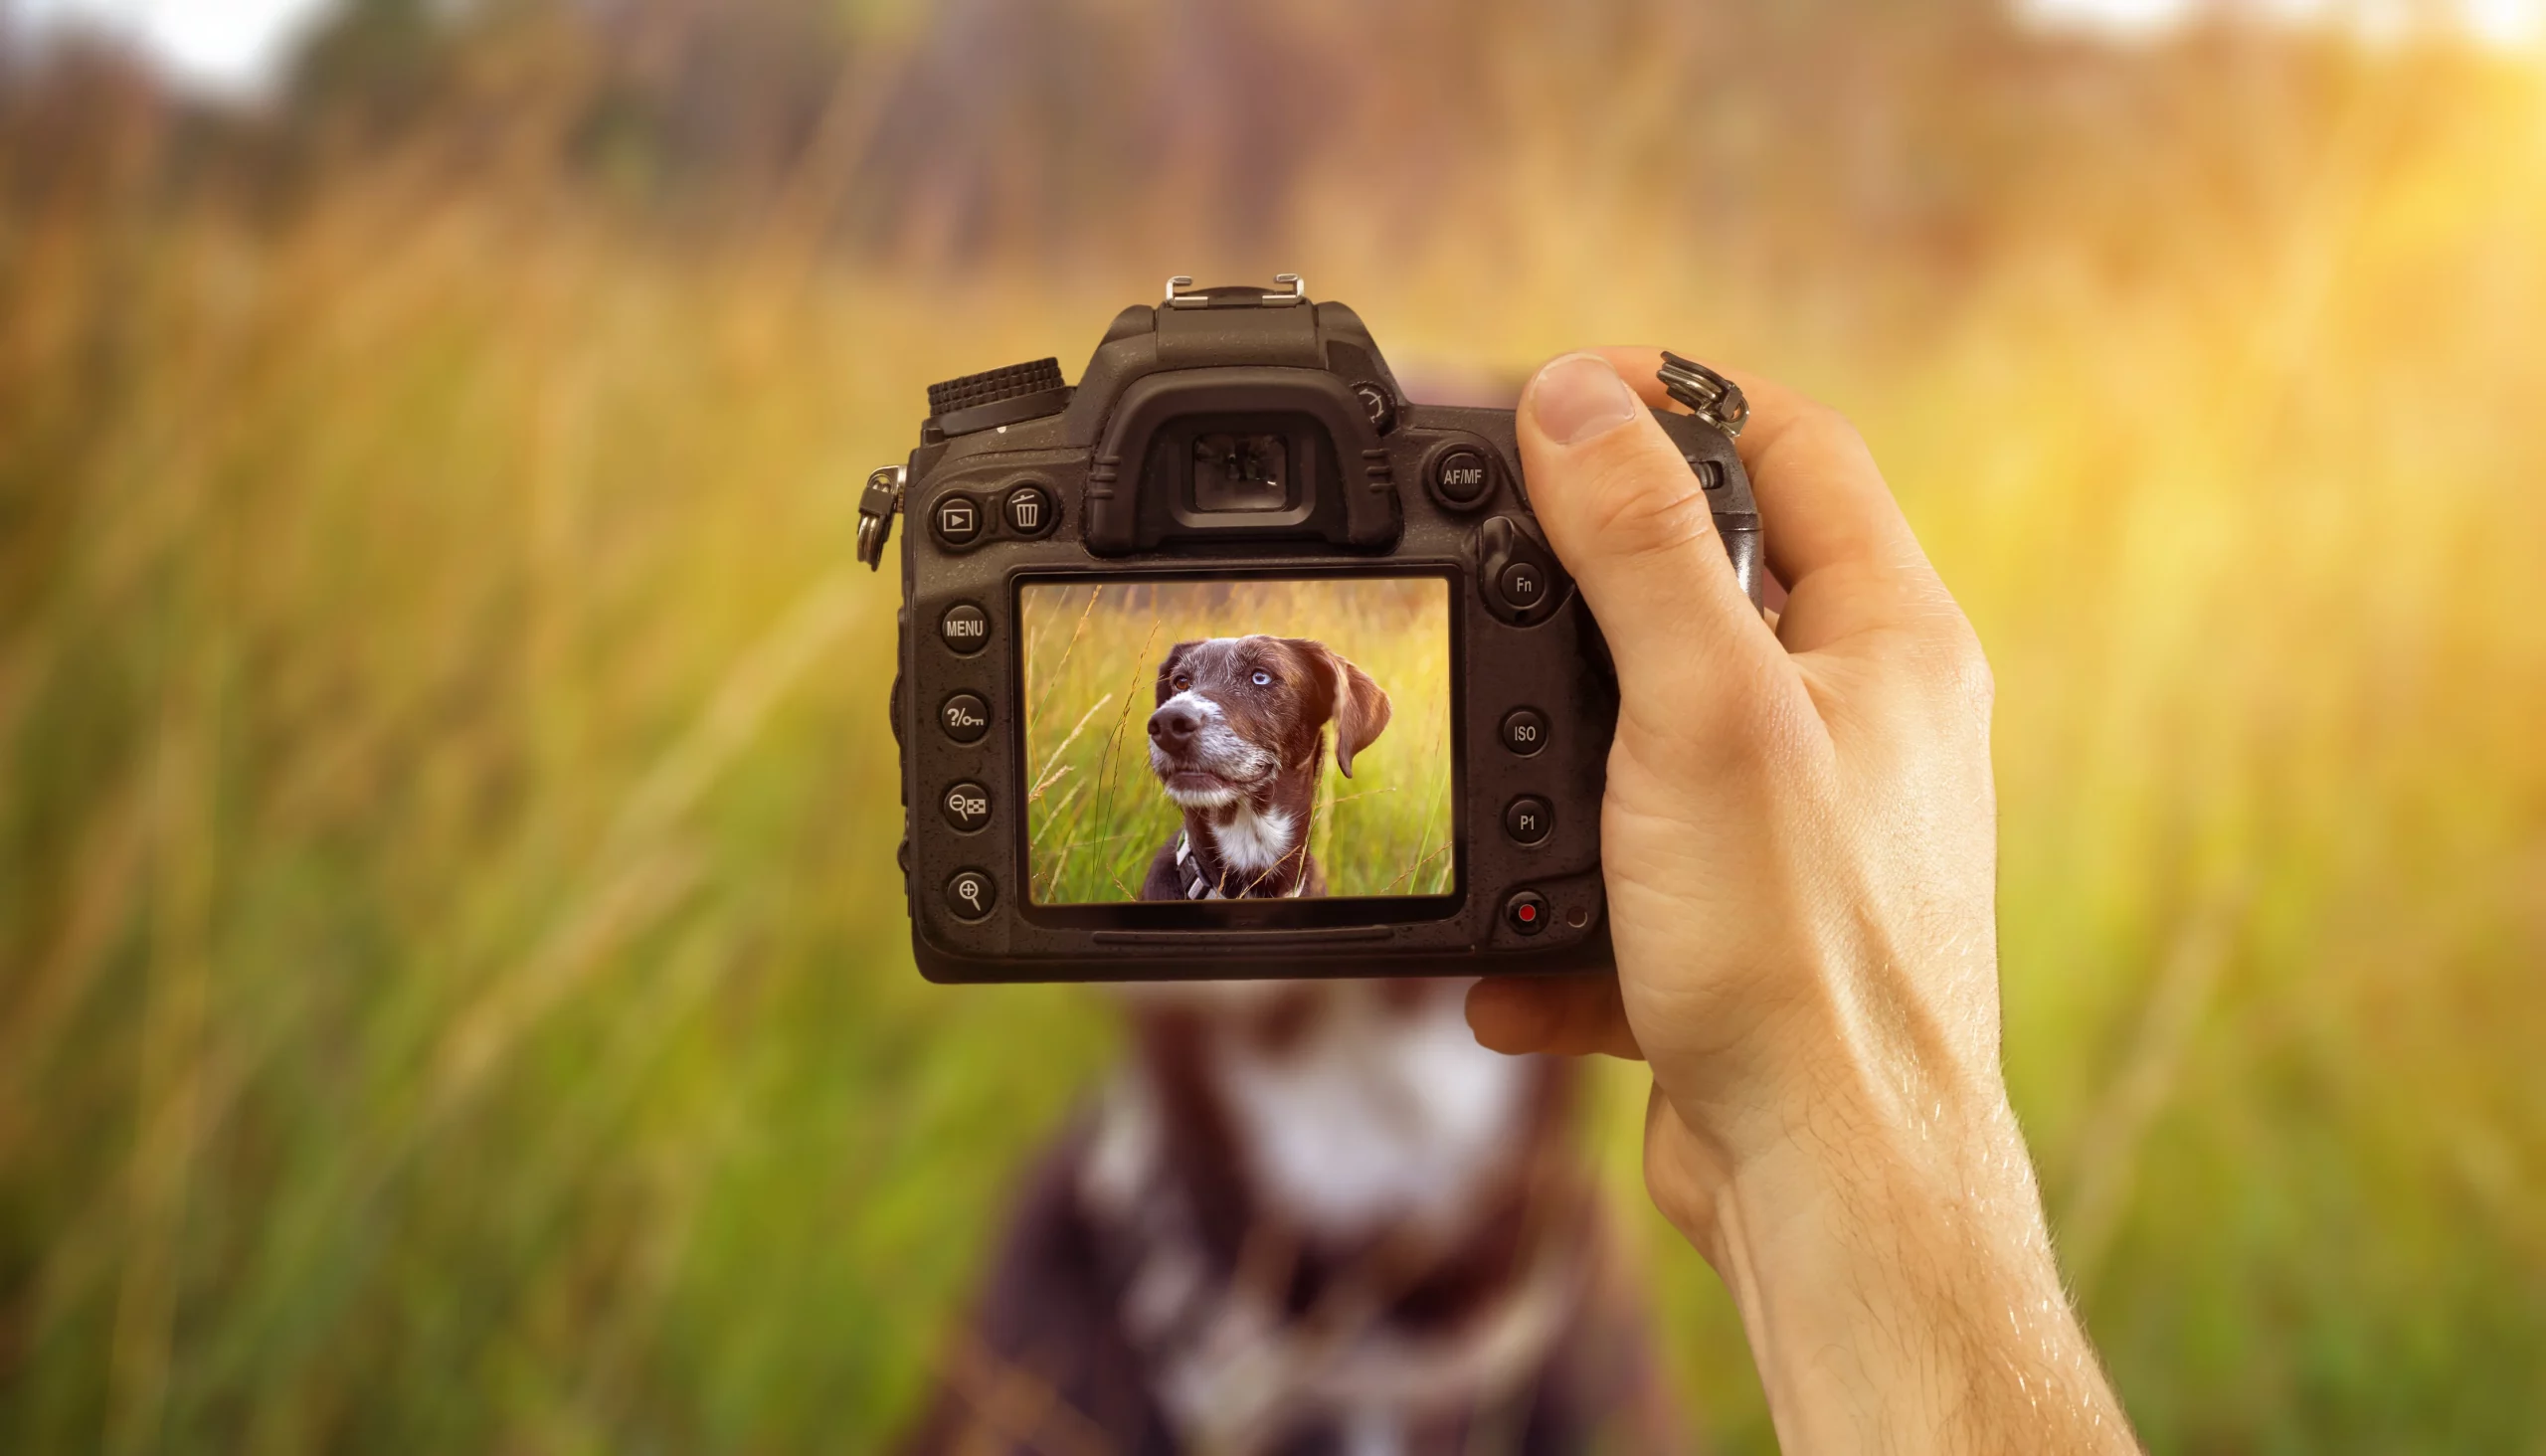 Eine professionelle Kamera wird von einer Hand gehalten. Auf dem Bildschirm der Kamera sieht man ein Portrait von einem Hund, welches gerade geschossen wird. Der Hund sitzt im Hintergrund auf einer Wiese.